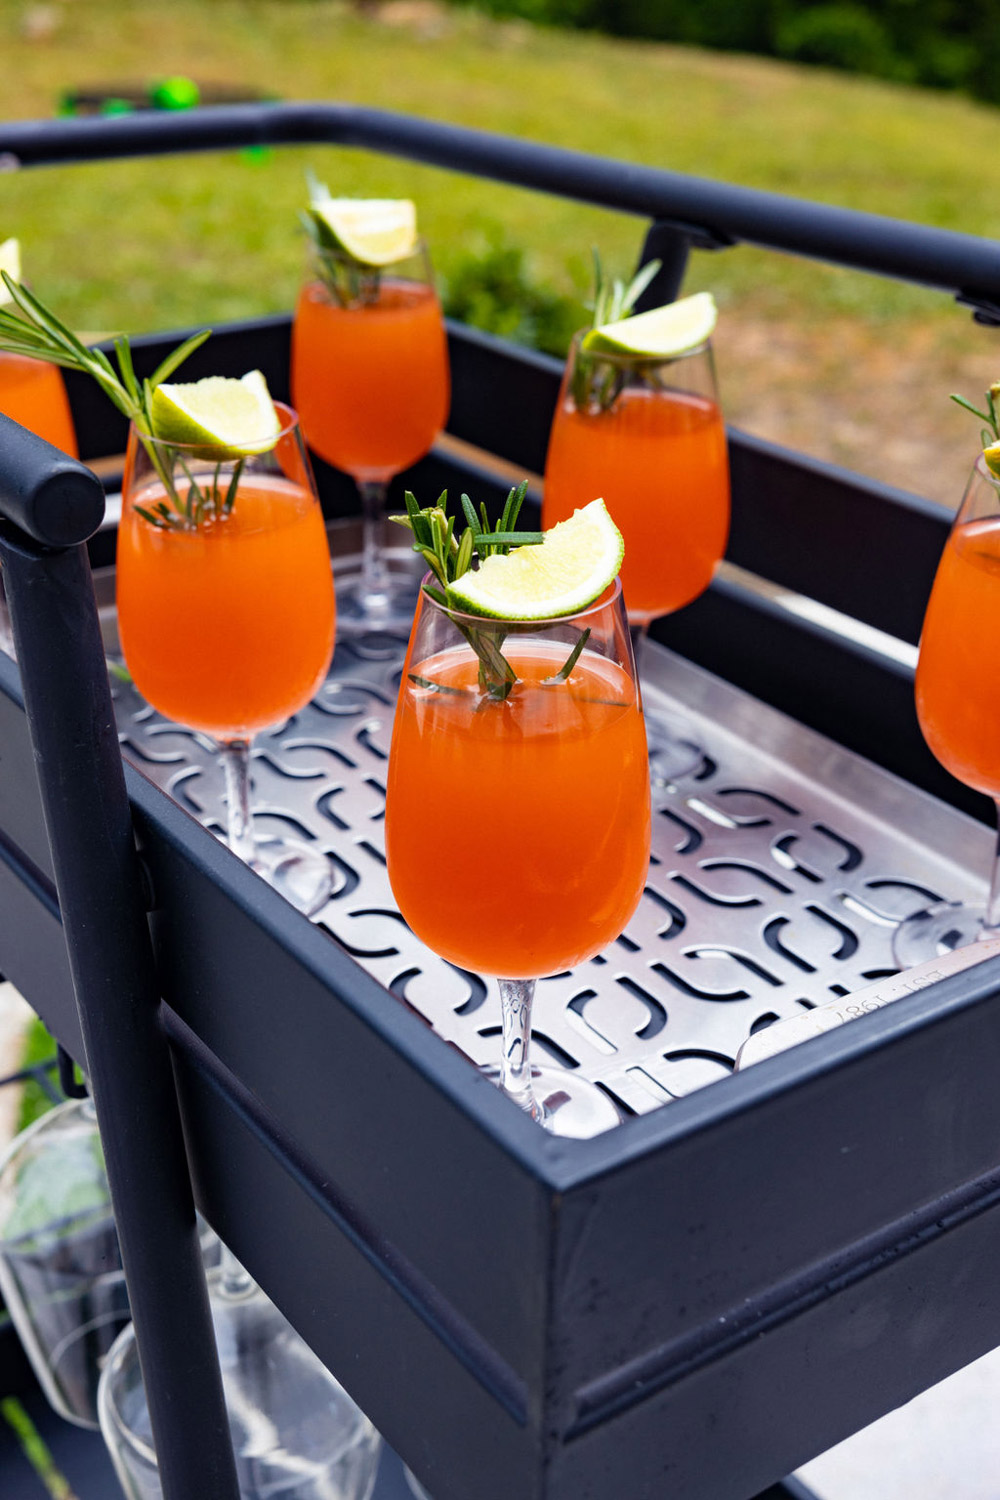 Mocktail drinks on a patterned bar cart.